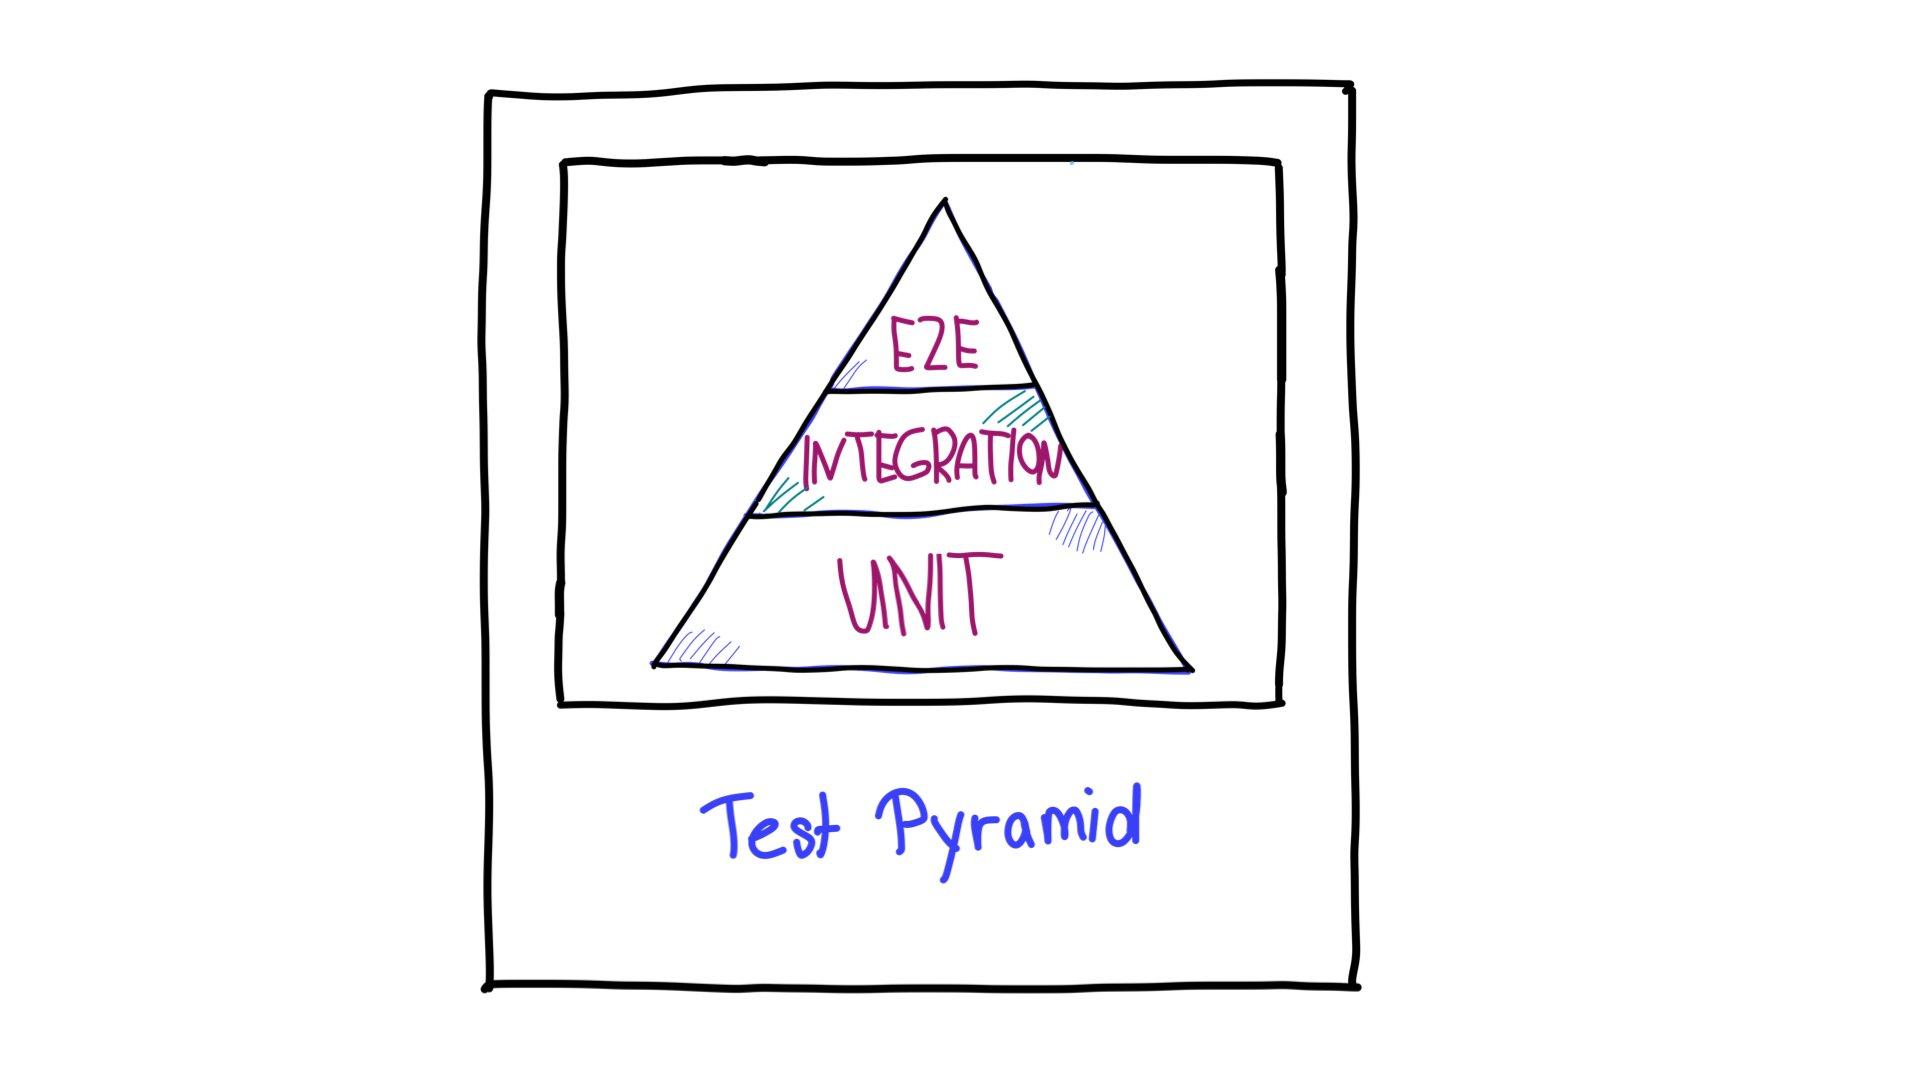 Pirámide de pruebas,
 con pruebas de extremo a extremo (E2E) en la parte superior, pruebas de integración en el medio y
 pruebas de unidades en la parte inferior.